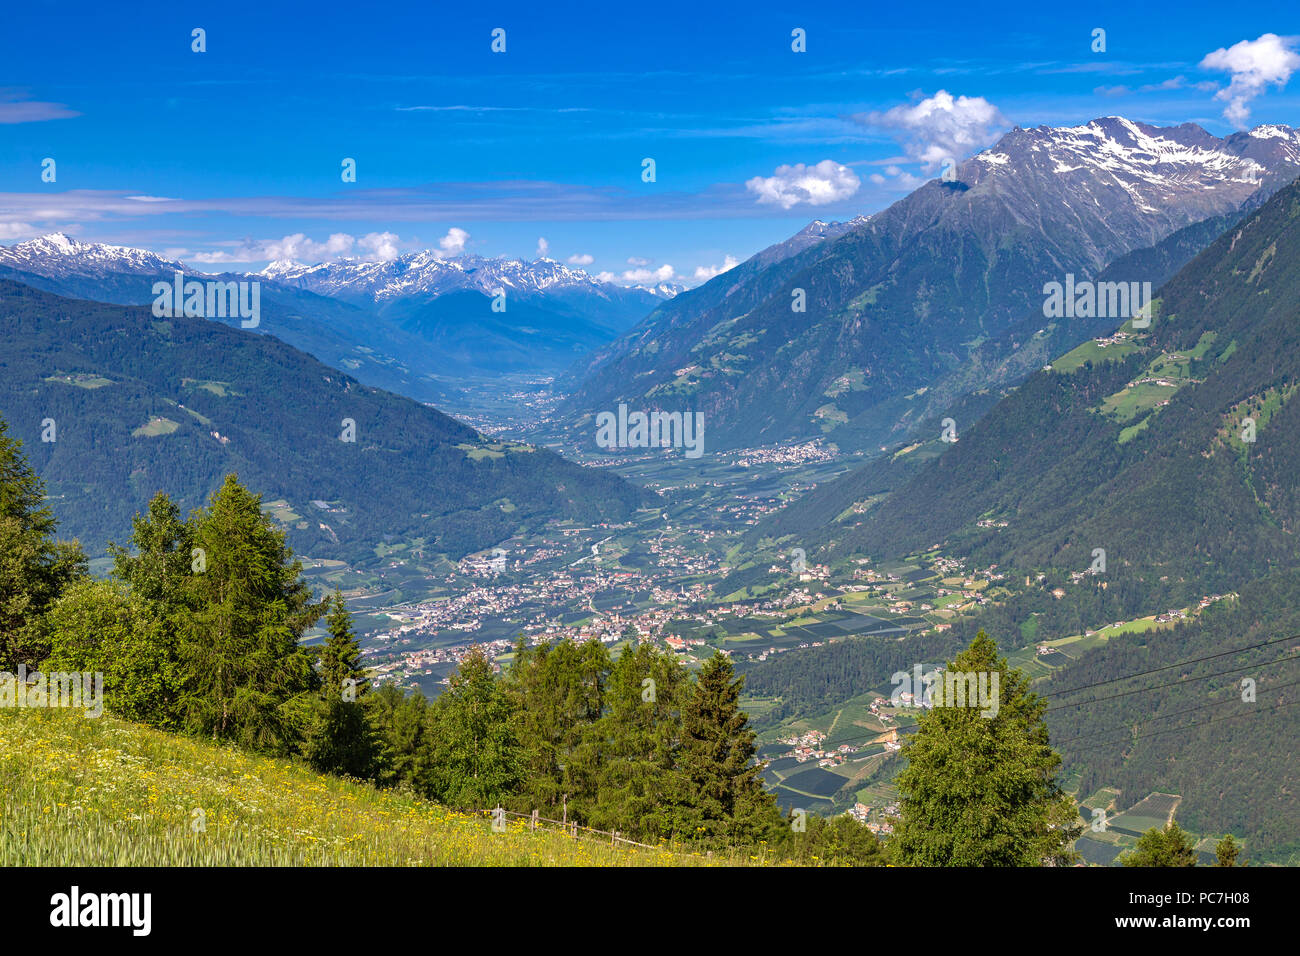 Blick in den Vinschgau vom Taser Höhenweg oberhalb von Schenna bei Meran,  Südtirol Stockfotografie - Alamy